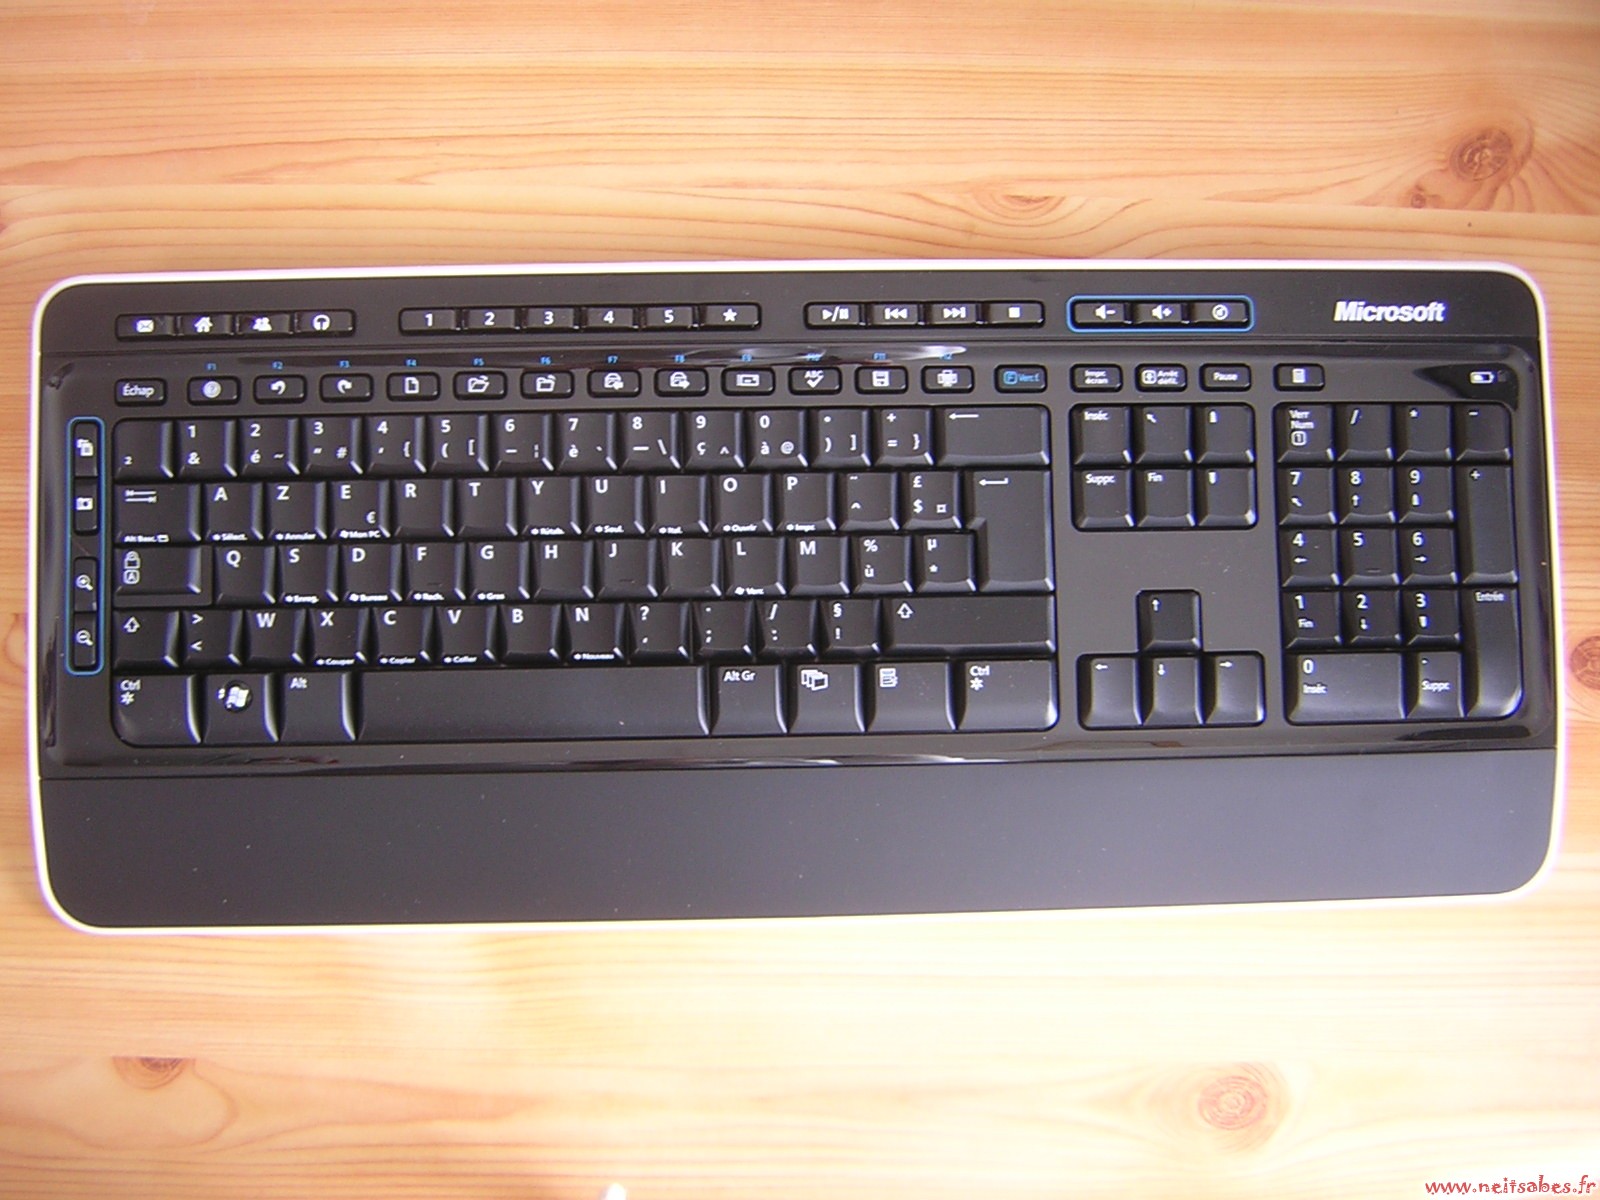 Achat - Microsoft Wireless Keyboard 3000